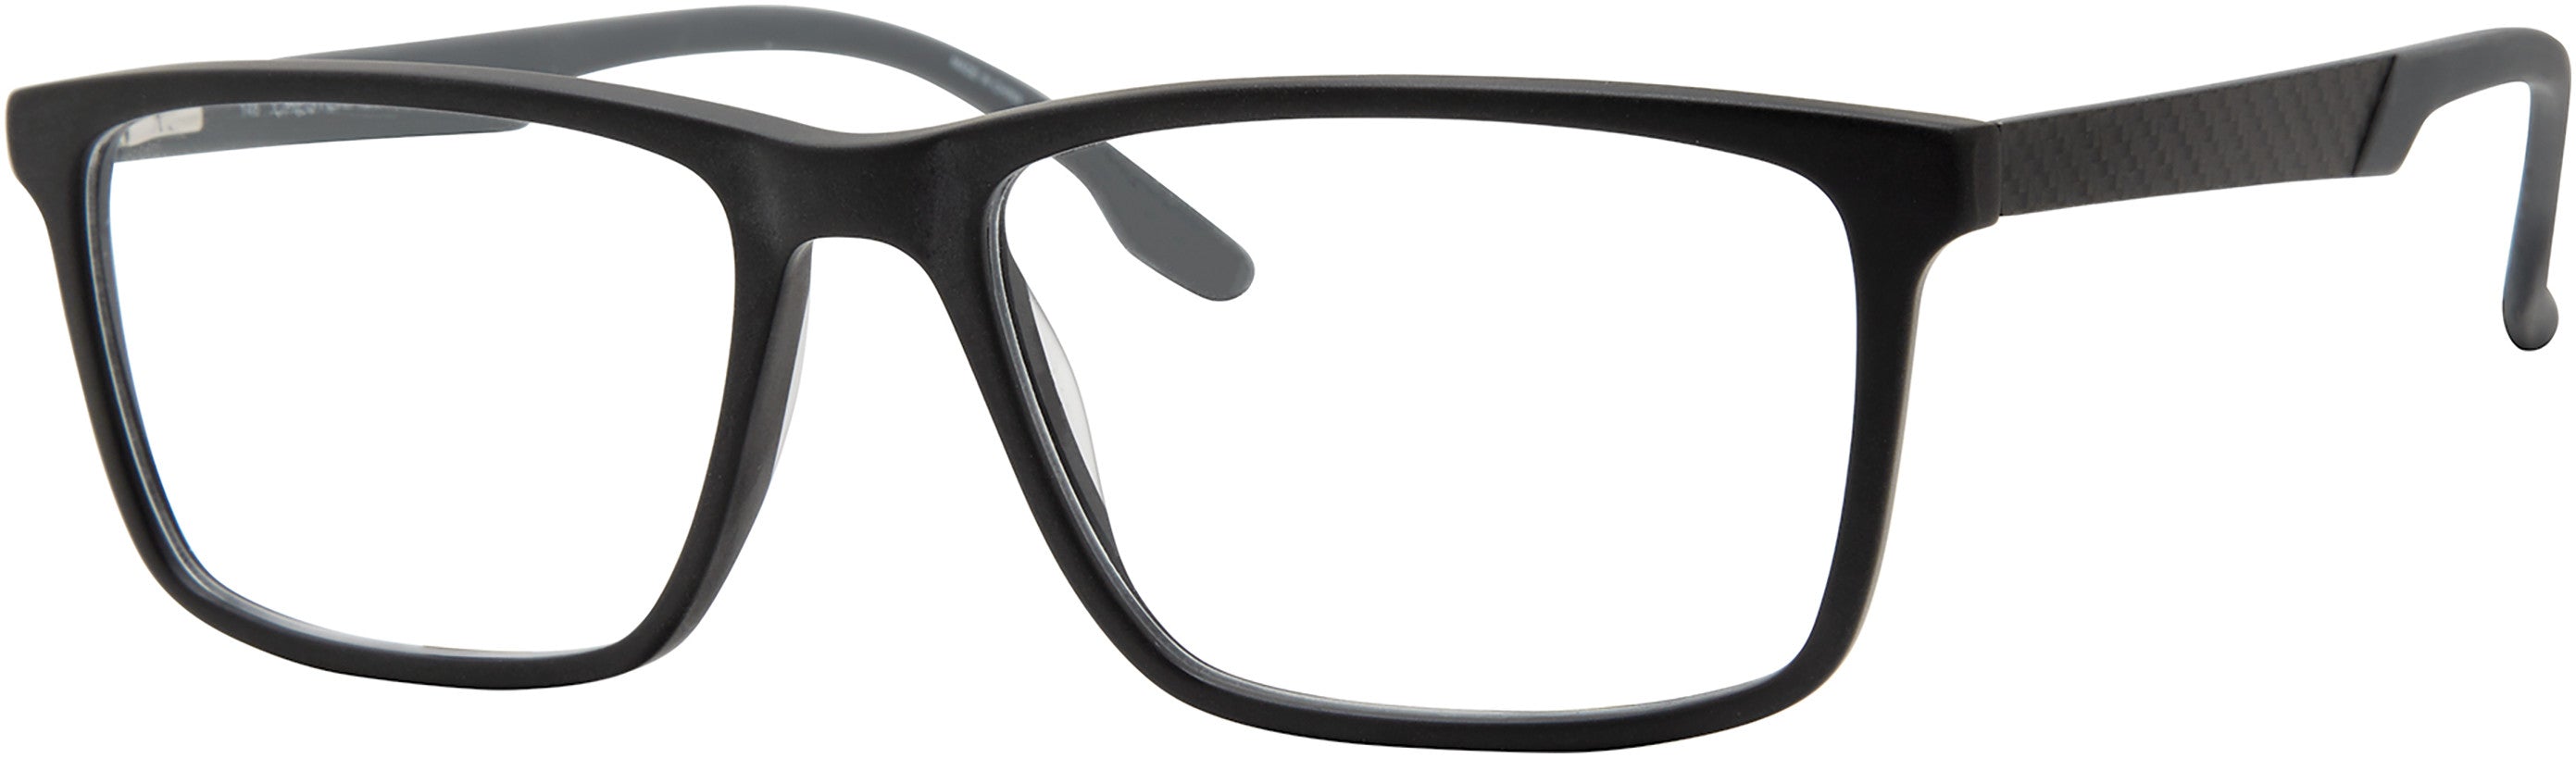  Chesterfield 70XL Rectangular Eyeglasses 0003-0003  Matte Black (00 Demo Lens)